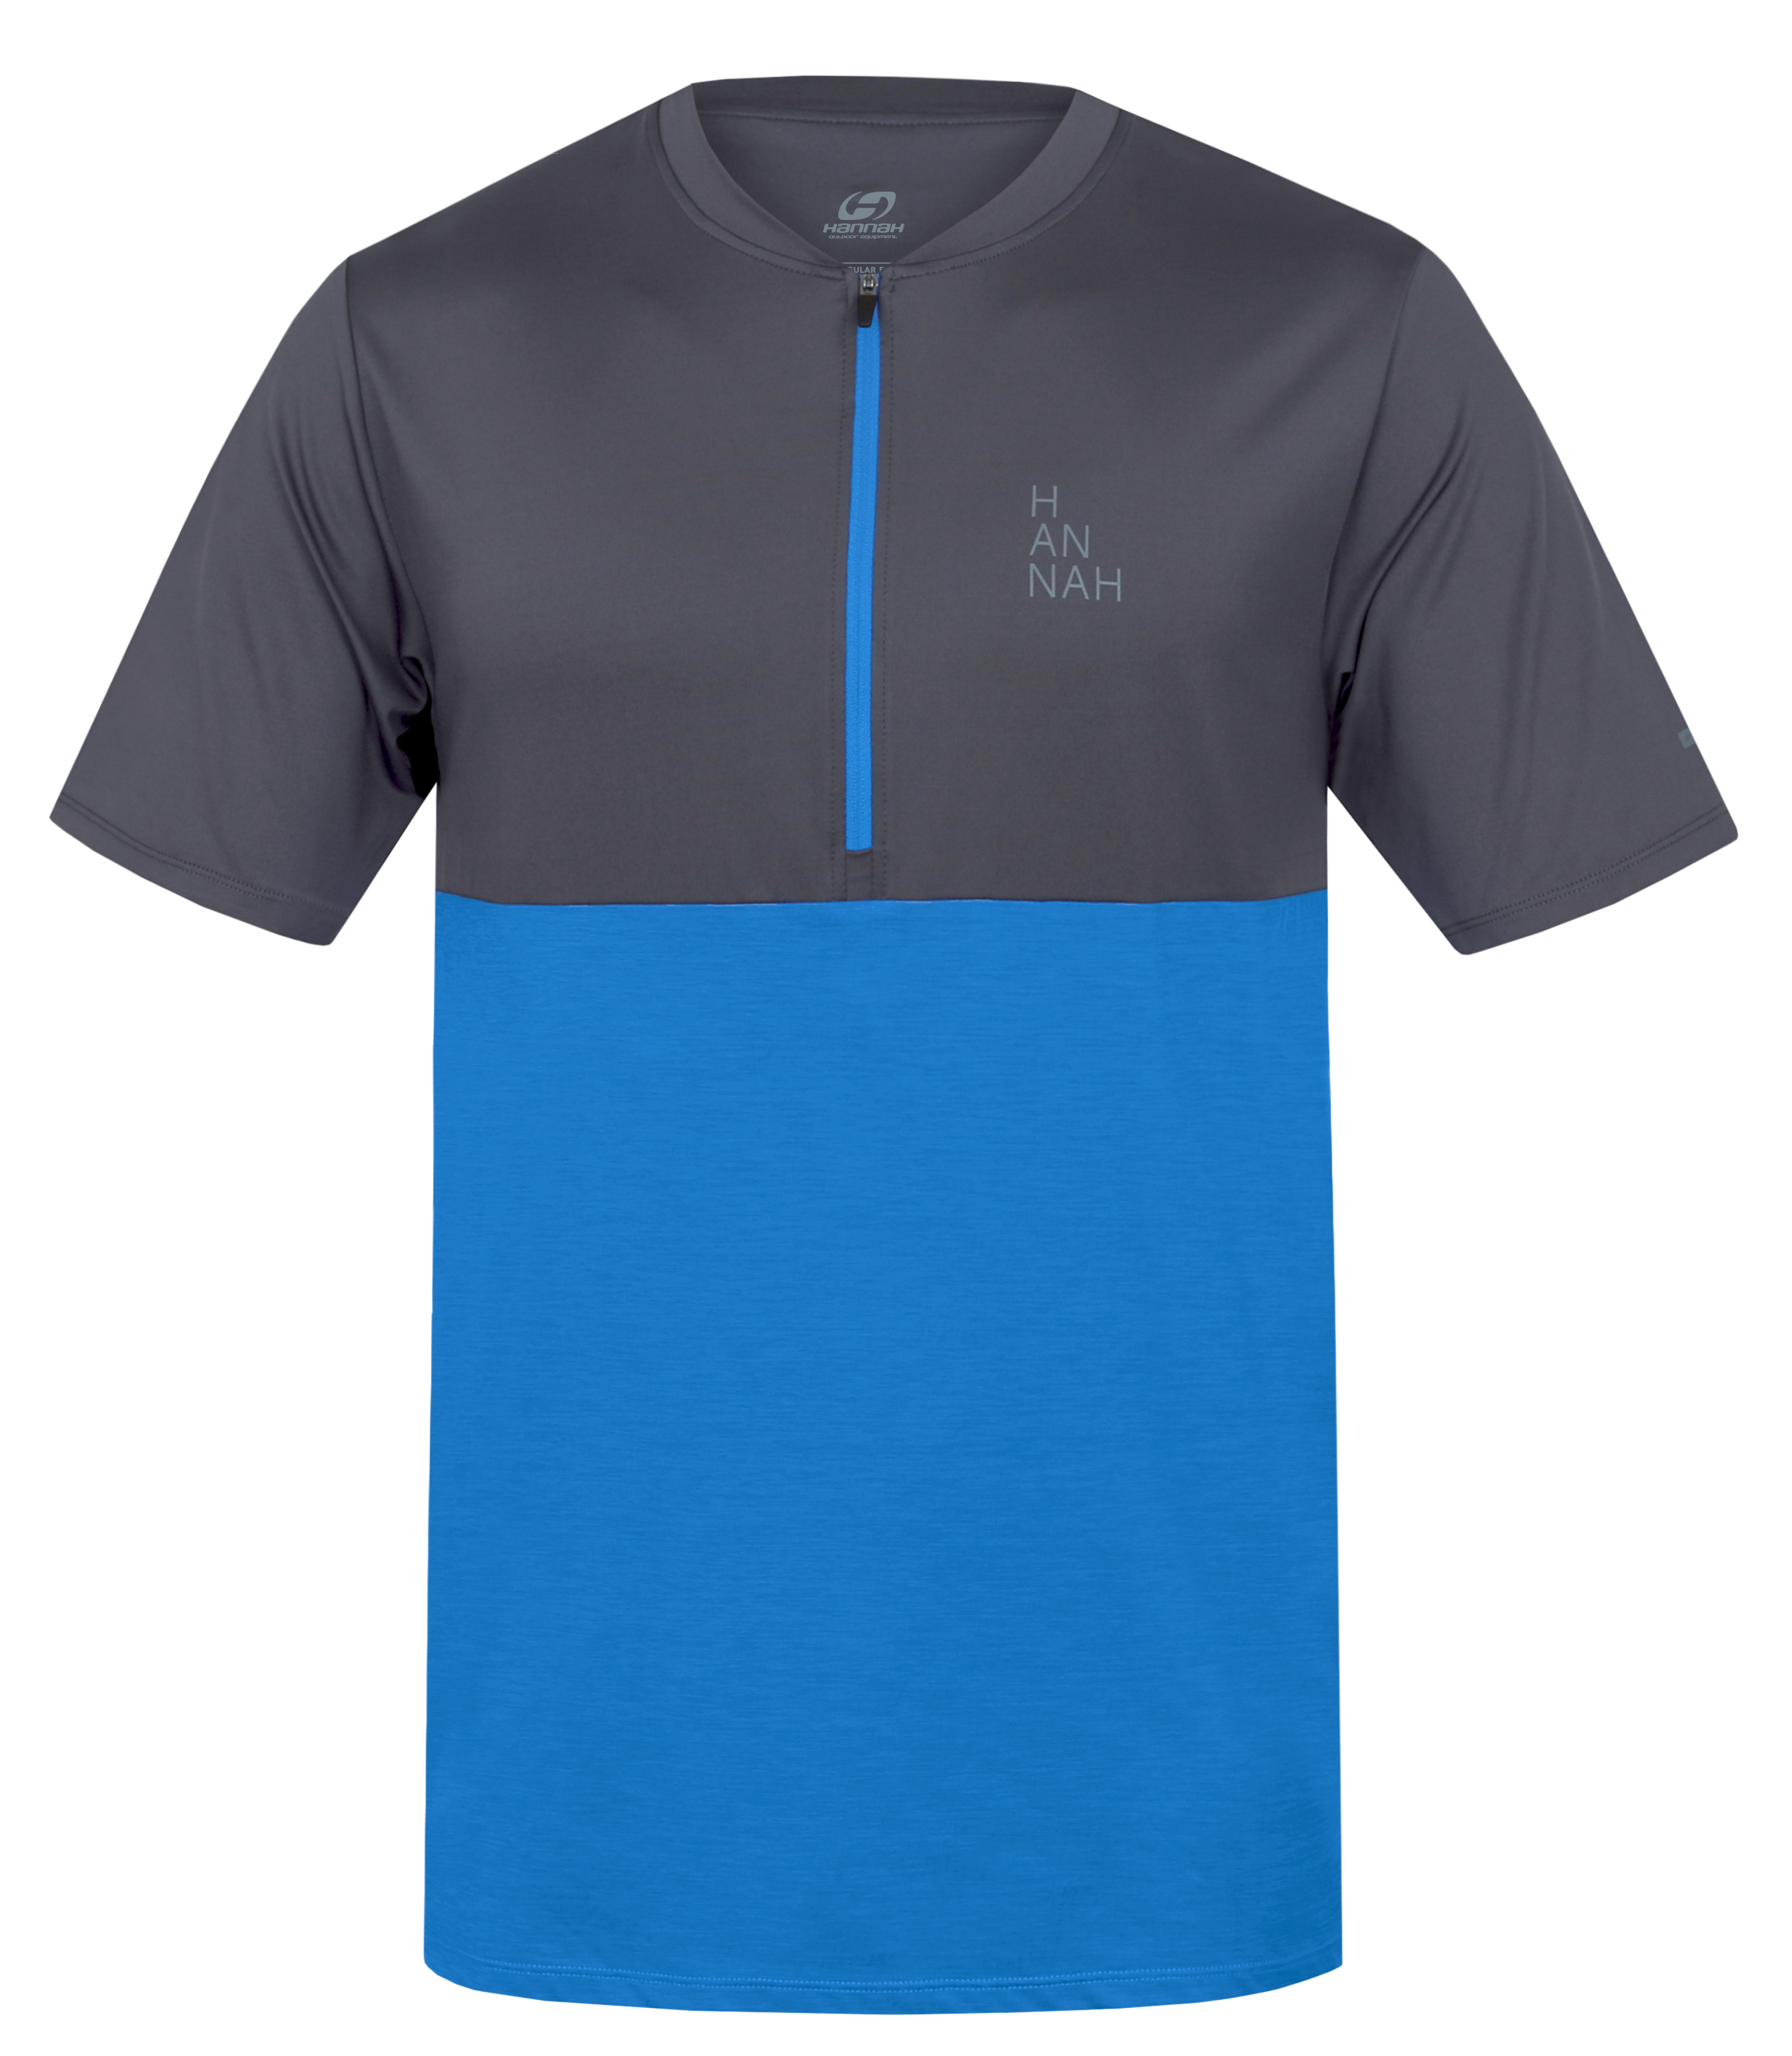 Hannah SANVI asphalt/french blue mel Velikost: L pánské tričko s krátkým rukávem